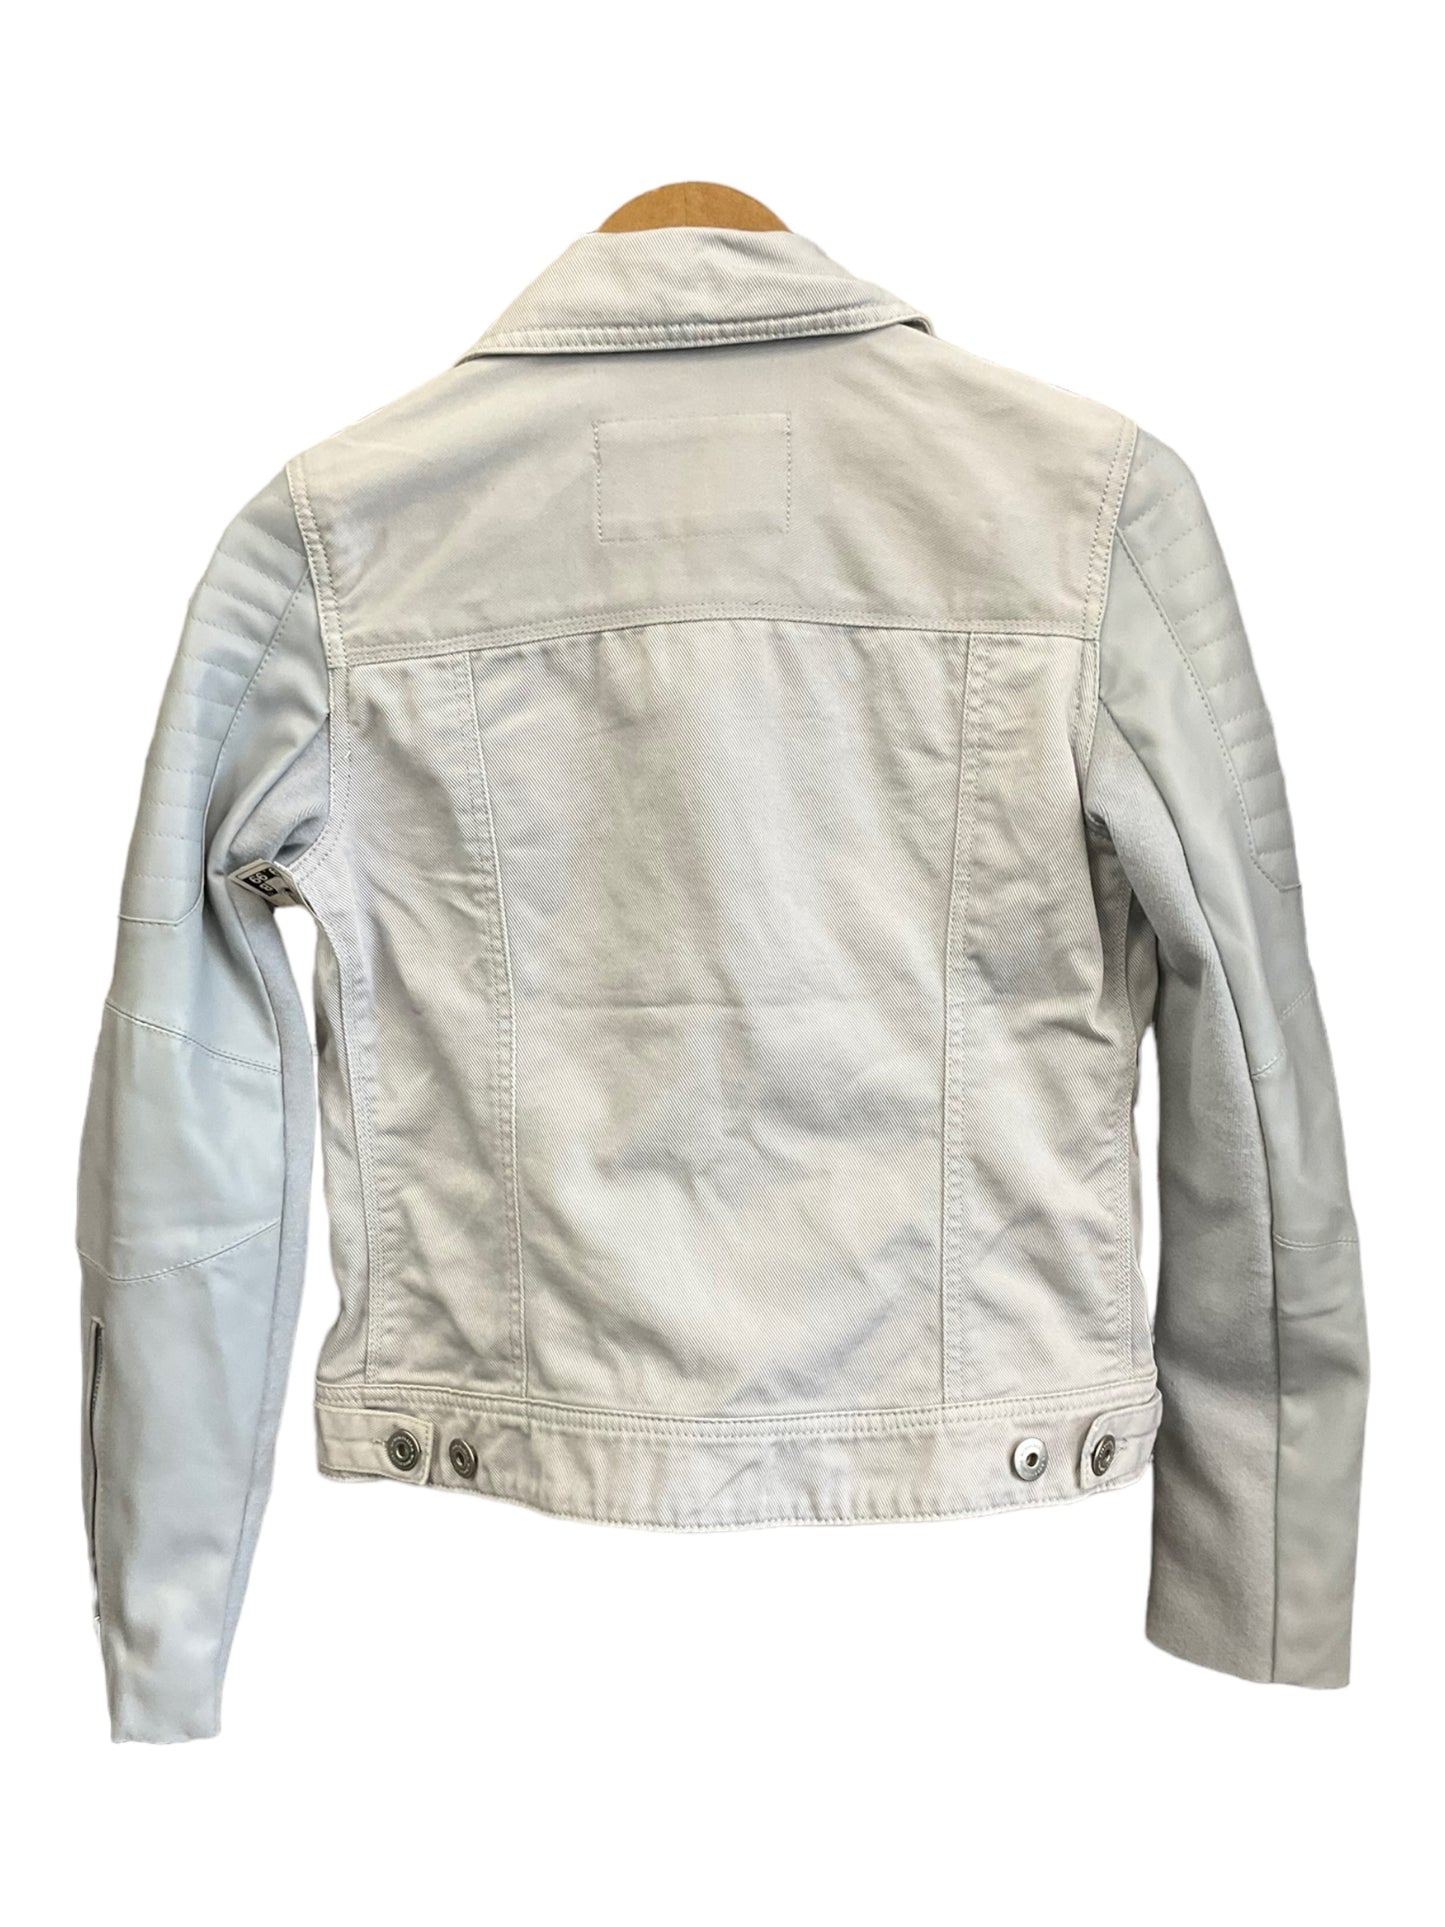 Jacket Moto By Bcbgmaxazria  Size: Xs